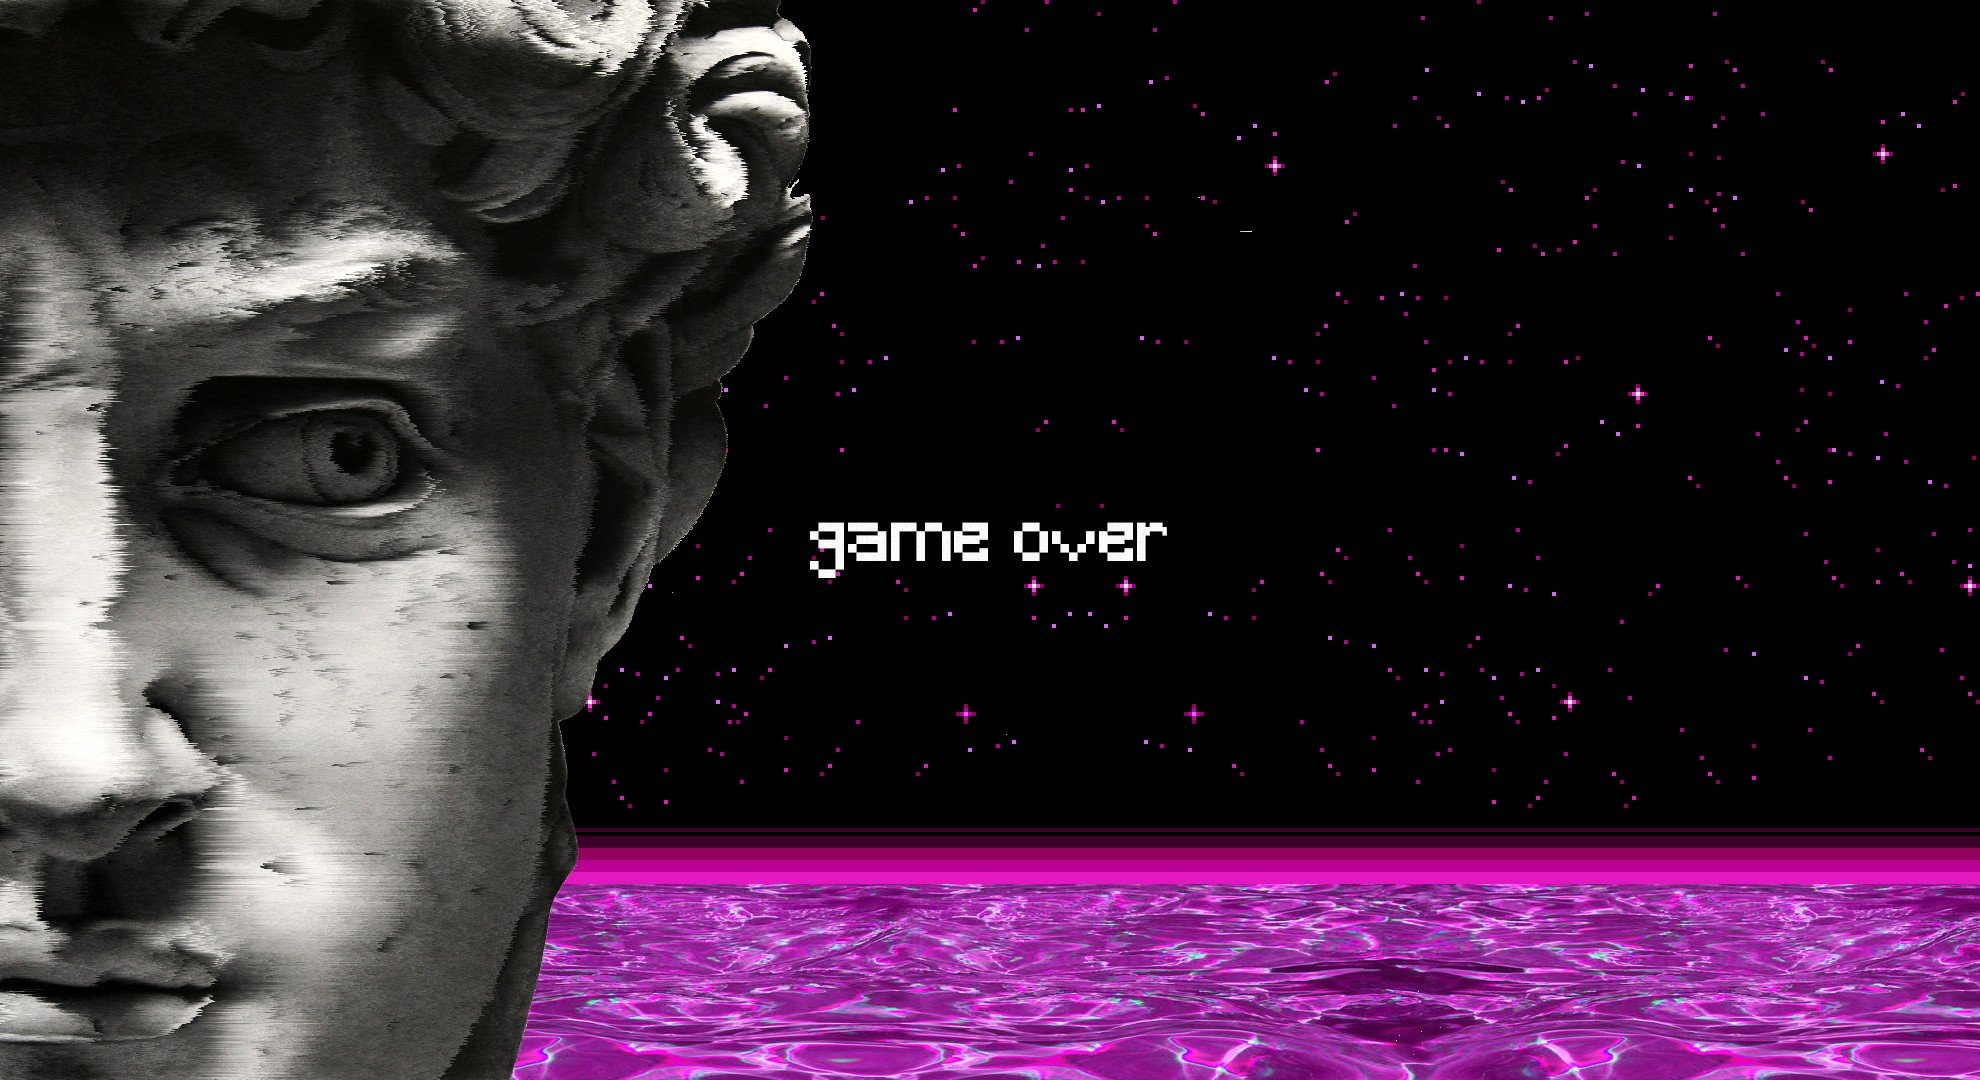 vaporwave, Statue, Water, Spaceship, GAME OVER, Pixel art Wallpaper